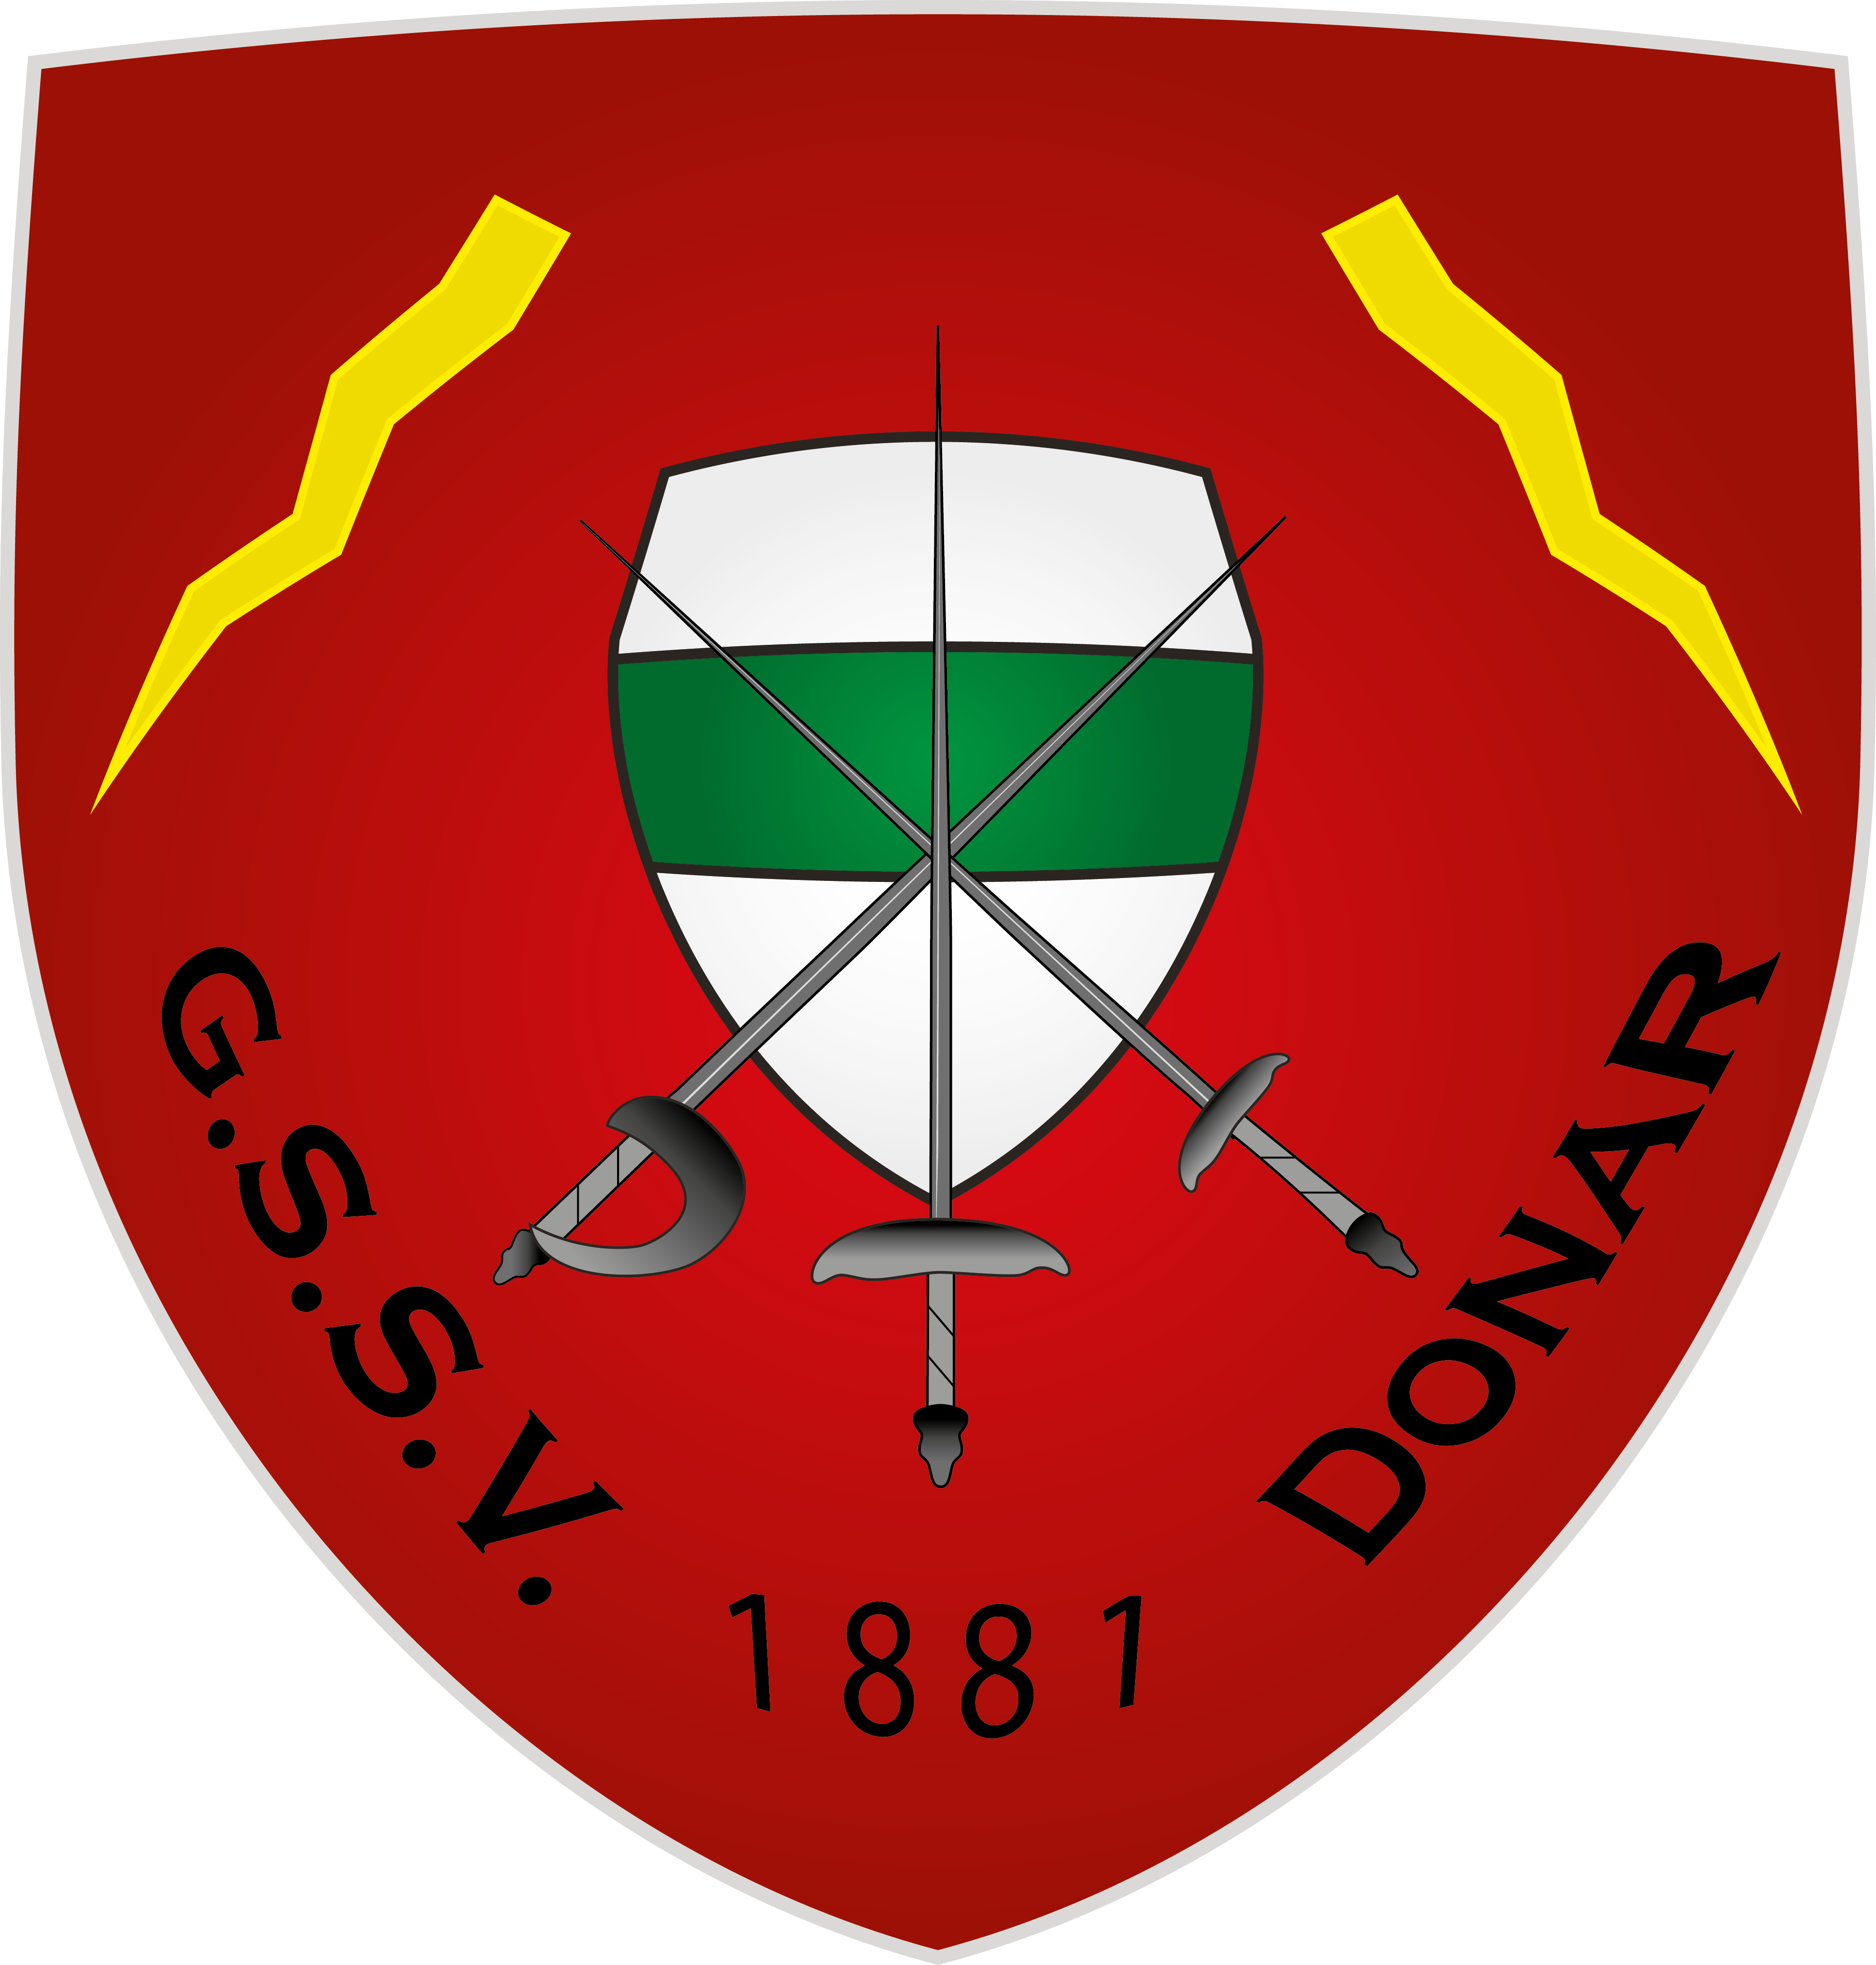 G.S.S.V. Donar 1881 logo